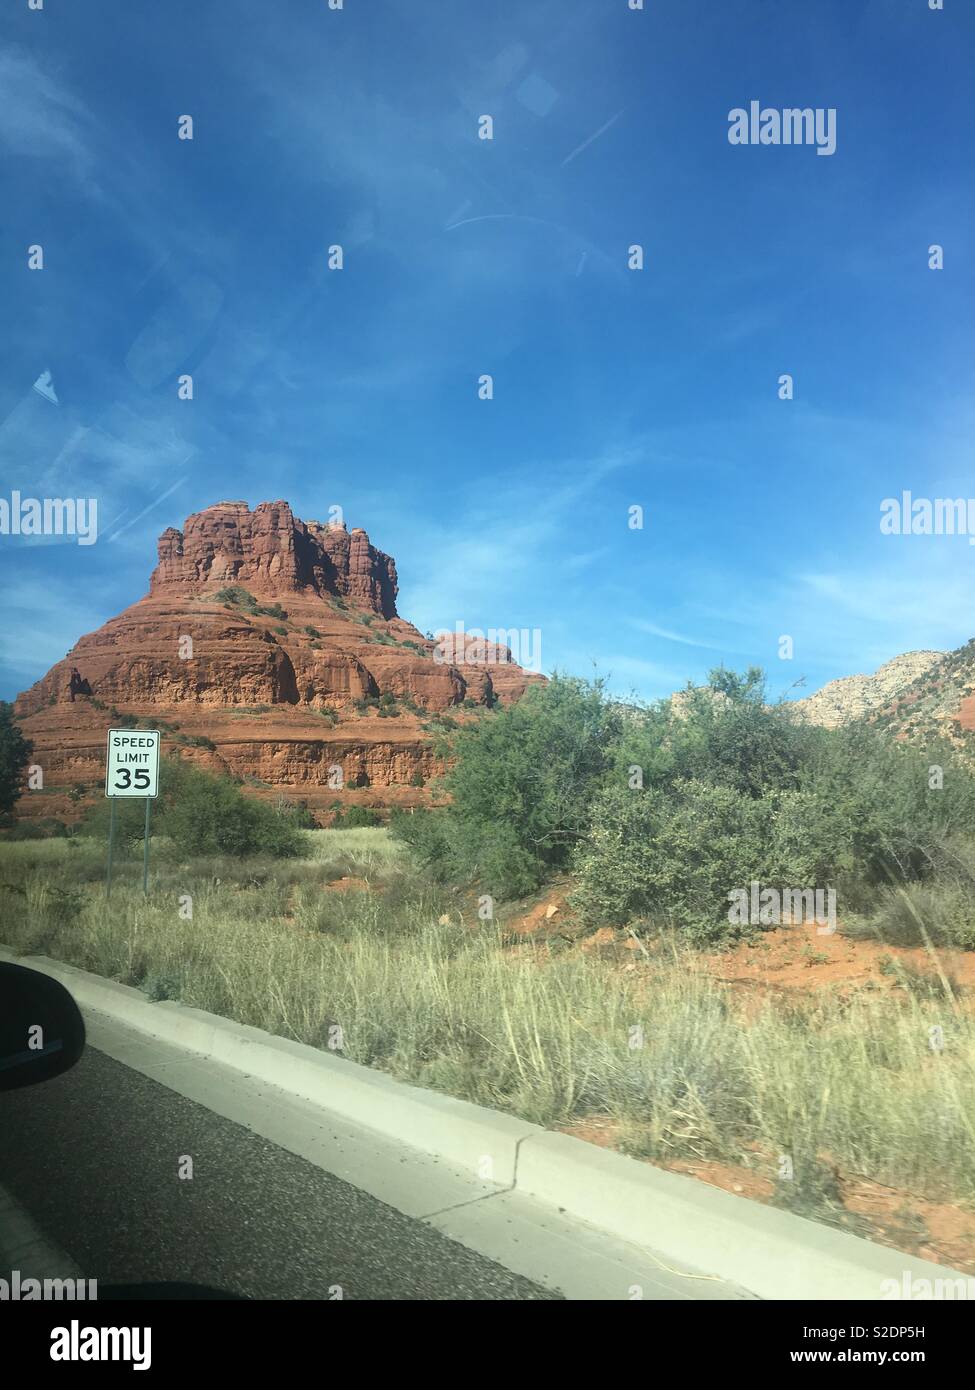 Driving into Sedona Arizona Stock Photo